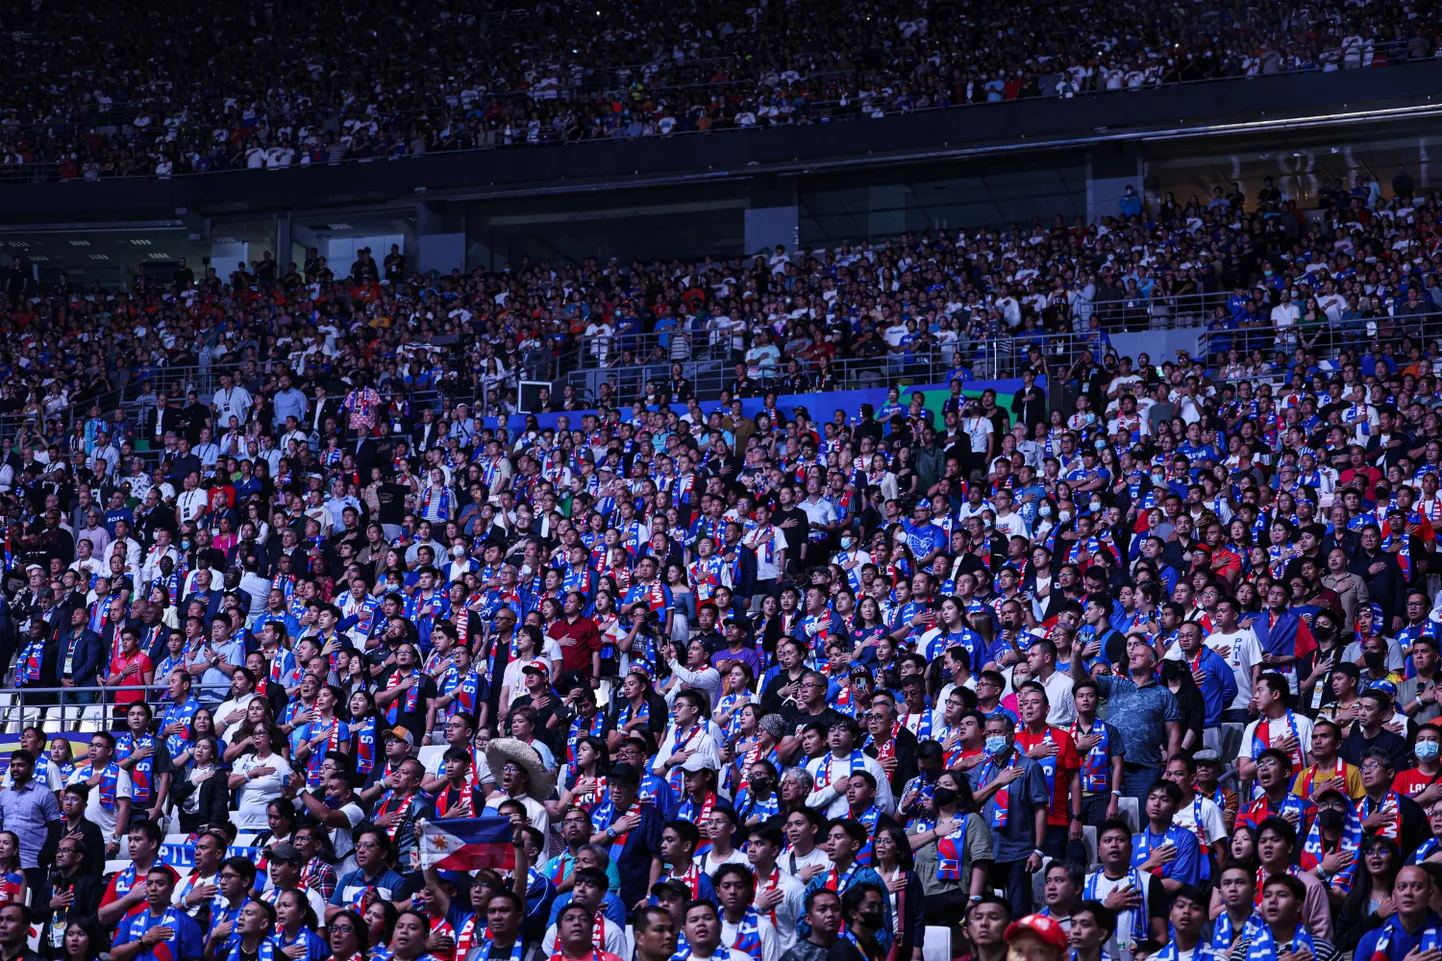 Philippine Arenal tehti korvpalli maailmameistrivõistluste ajalugu.